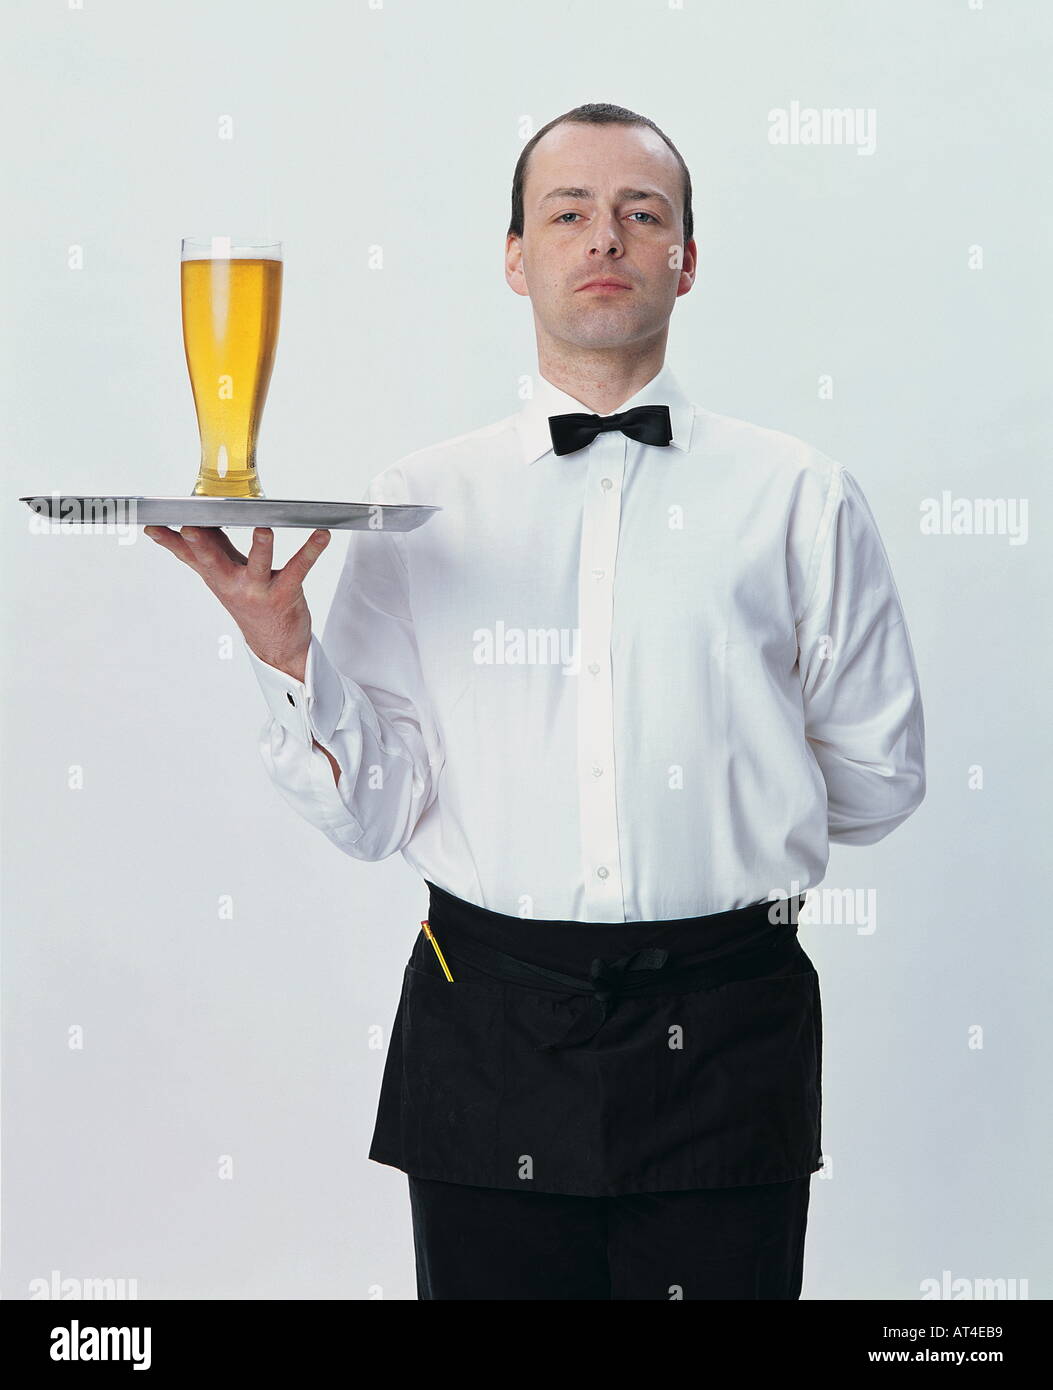 waiter serving beer Stock Photo